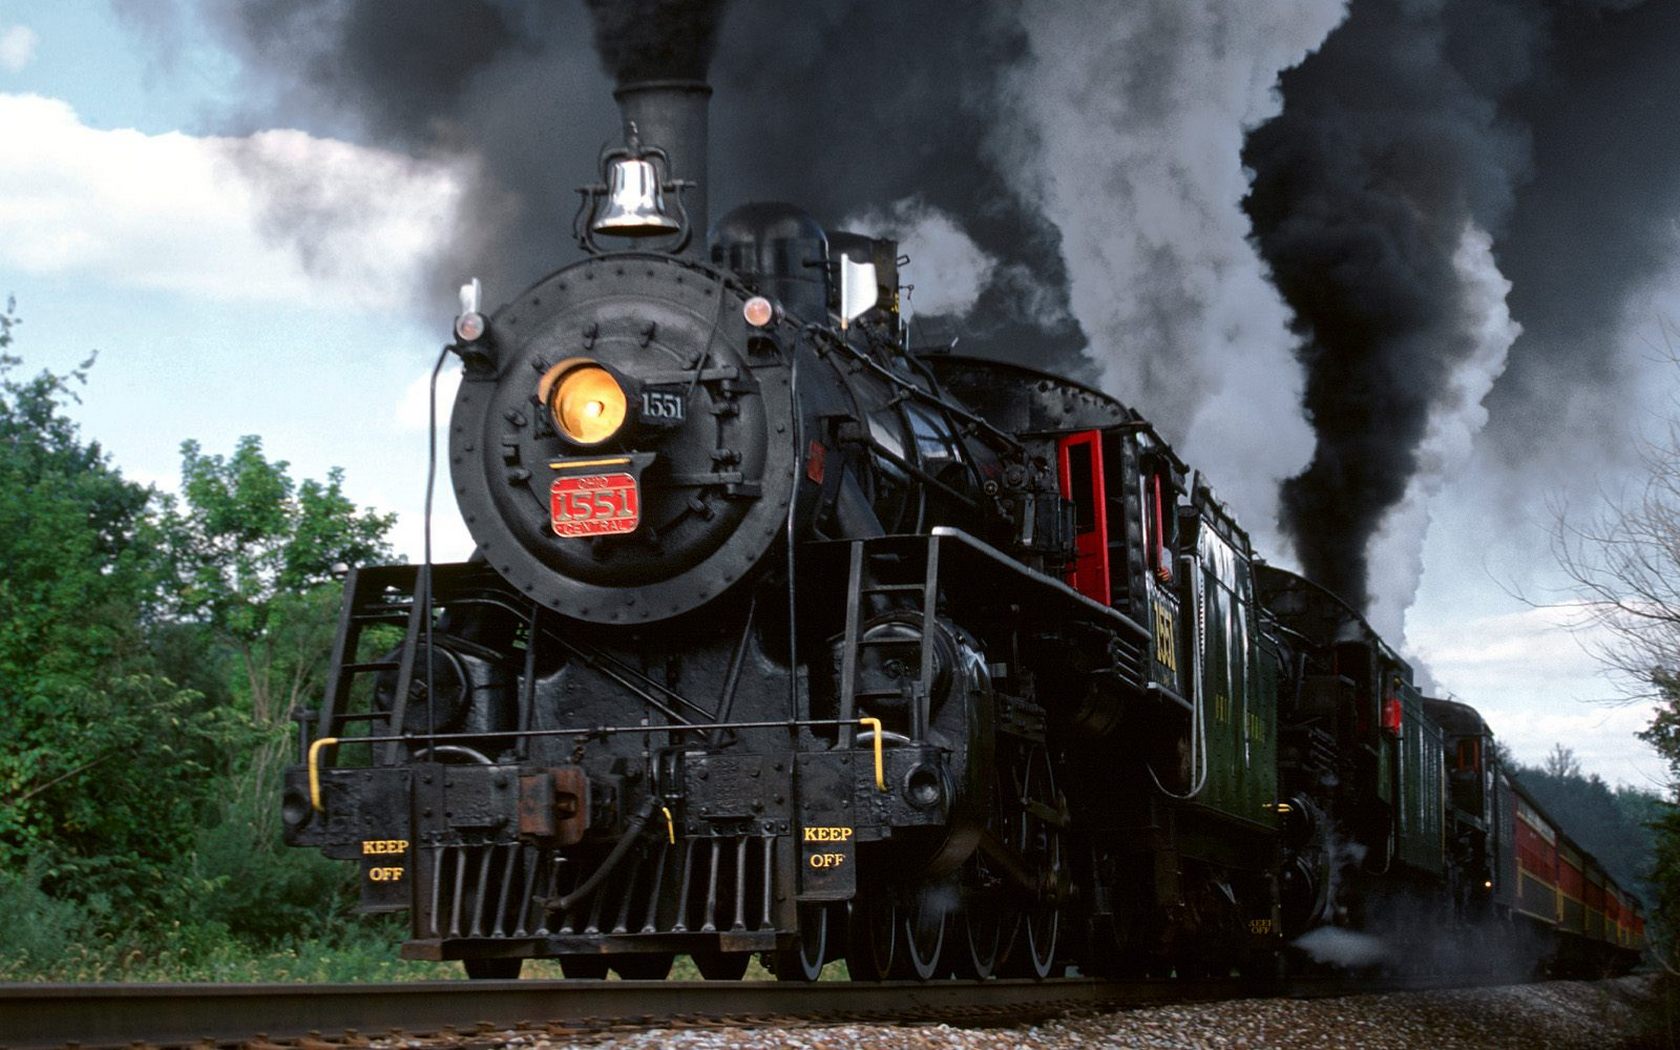 Download HQ Ohio central railroad, sugarcreek, ohio Trains wallpaper / 1680x1050